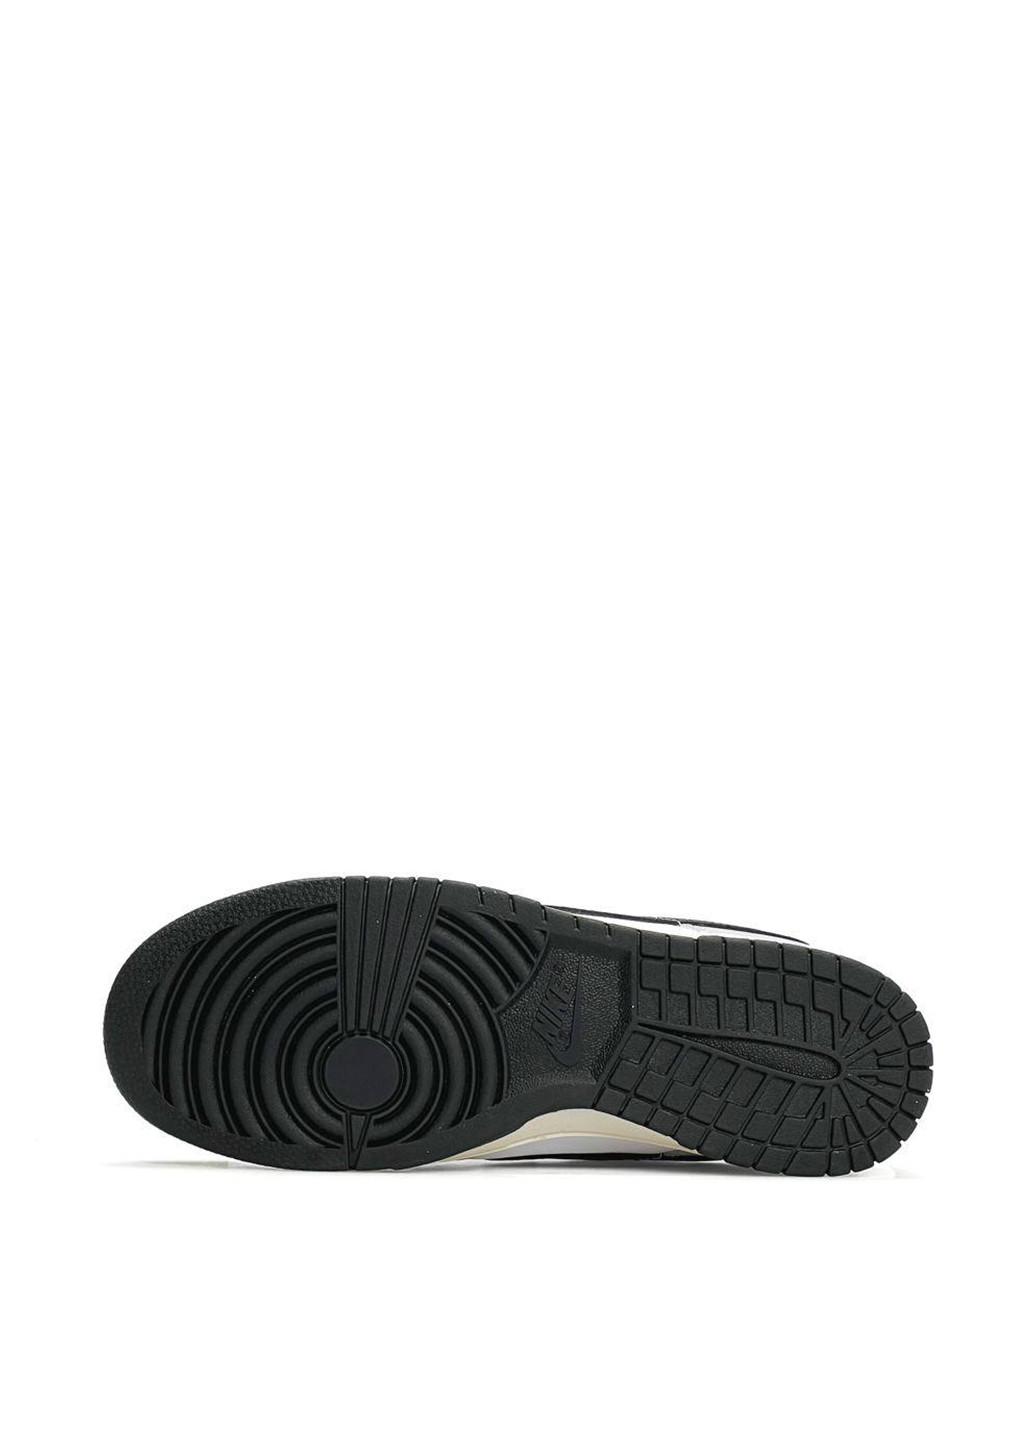 Цветные всесезонные кроссовки Nike SB Dunk Low Grey&Black